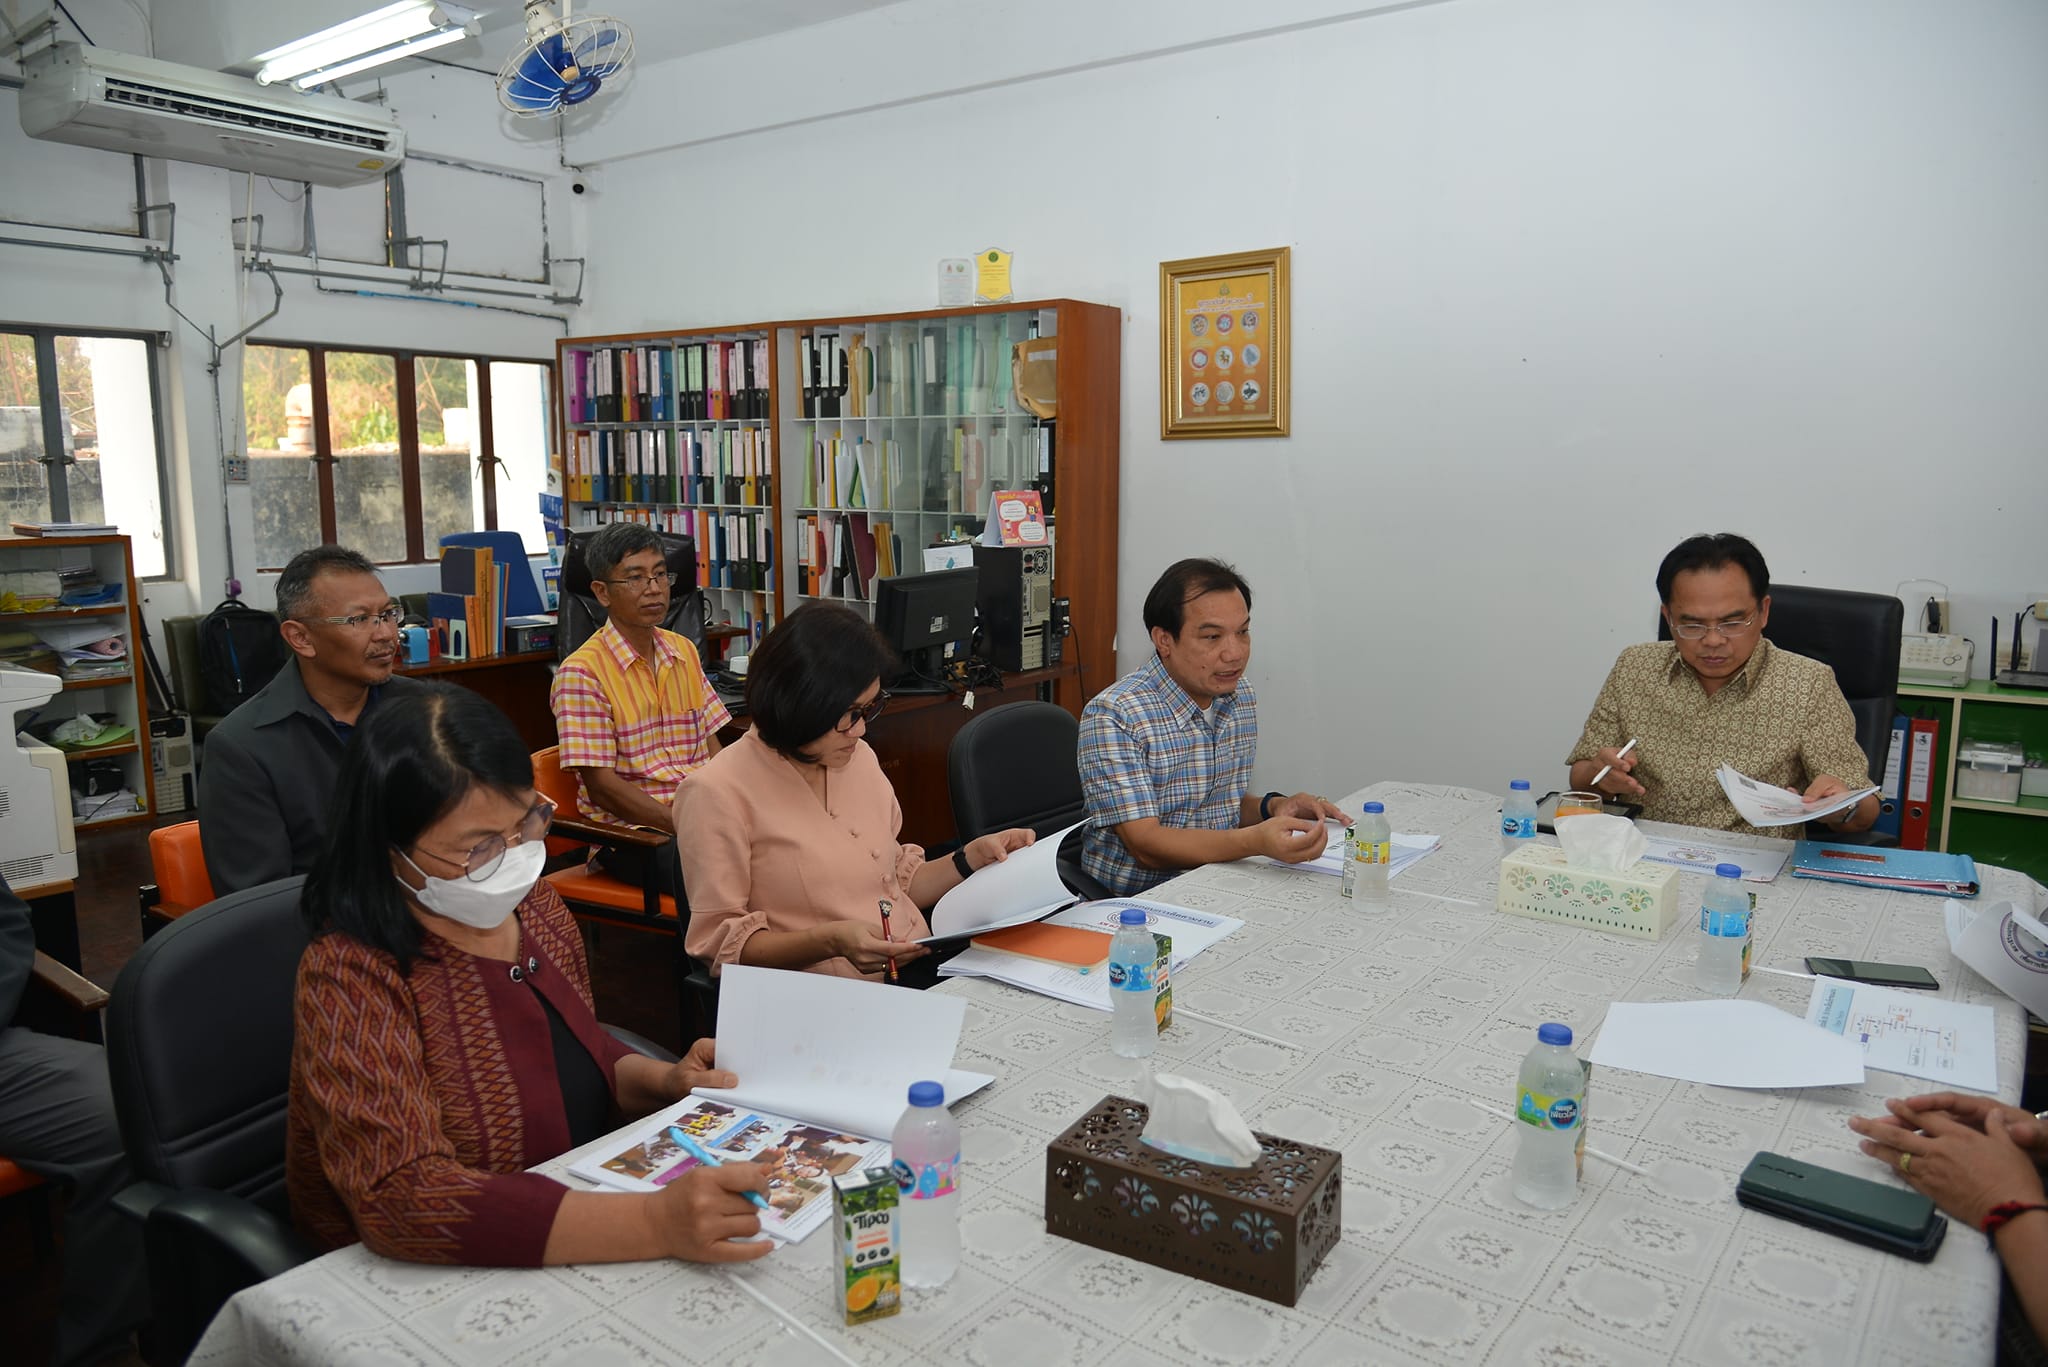 ผู้อำนวยการสำนักประชาสัมพันธ์เขต 1 ( ดร.พรพิทักษ์ แม้นศิริ ) พร้อมคณะผู้บริหาร และเจ้าหน้าที่ ออกประเมิน สถานีวิทยุกระจายเสียงแห่งประเทศไทย ดีเด่น ระดับเขต และ สำนักงานประชาสัมพันธ์จังหวัด ดีเด่น ระดับภาค 1 และการนิเทศติดตามงานของหน่วยงานในสังกัดสำนักประชาสัมพันธ์เขต 1 กรมประชาสัมพันธ์ ประจำปีงบประมาณ 2566 ในพื้นที่ 11 จังหวัดภาคอีสานตอบบน ณ สวศ.ขก.